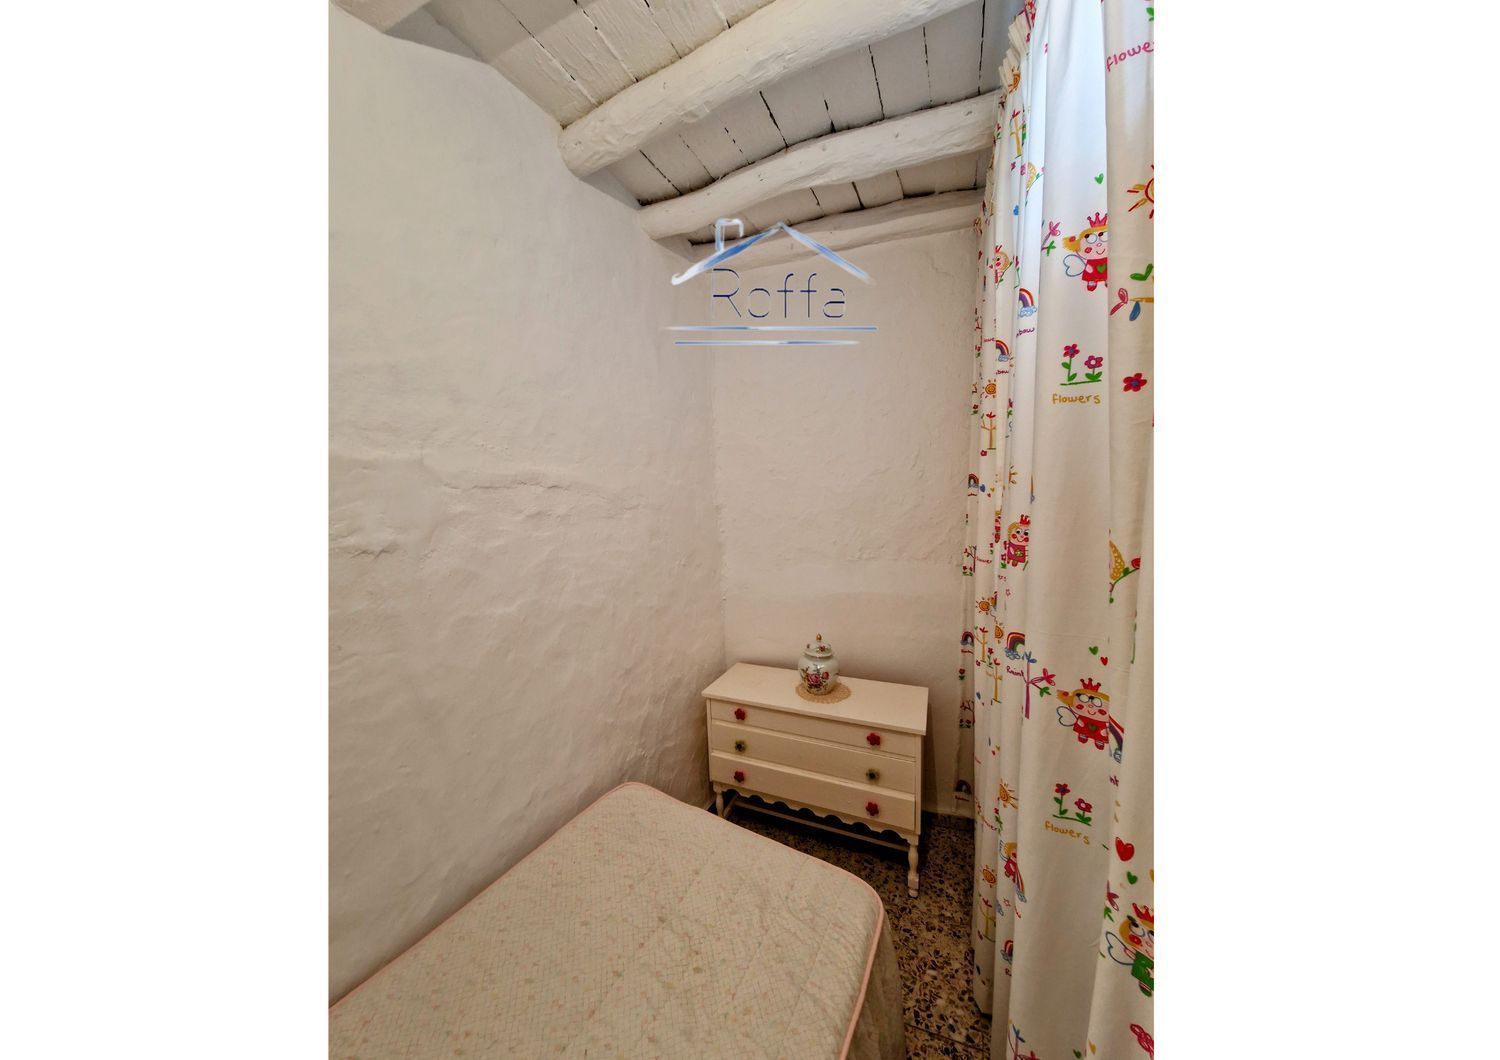 Área de Molvízar, Granada, 5 Bedrooms Bedrooms, 5 Rooms Rooms,1 BathroomBathrooms,House,For Sale